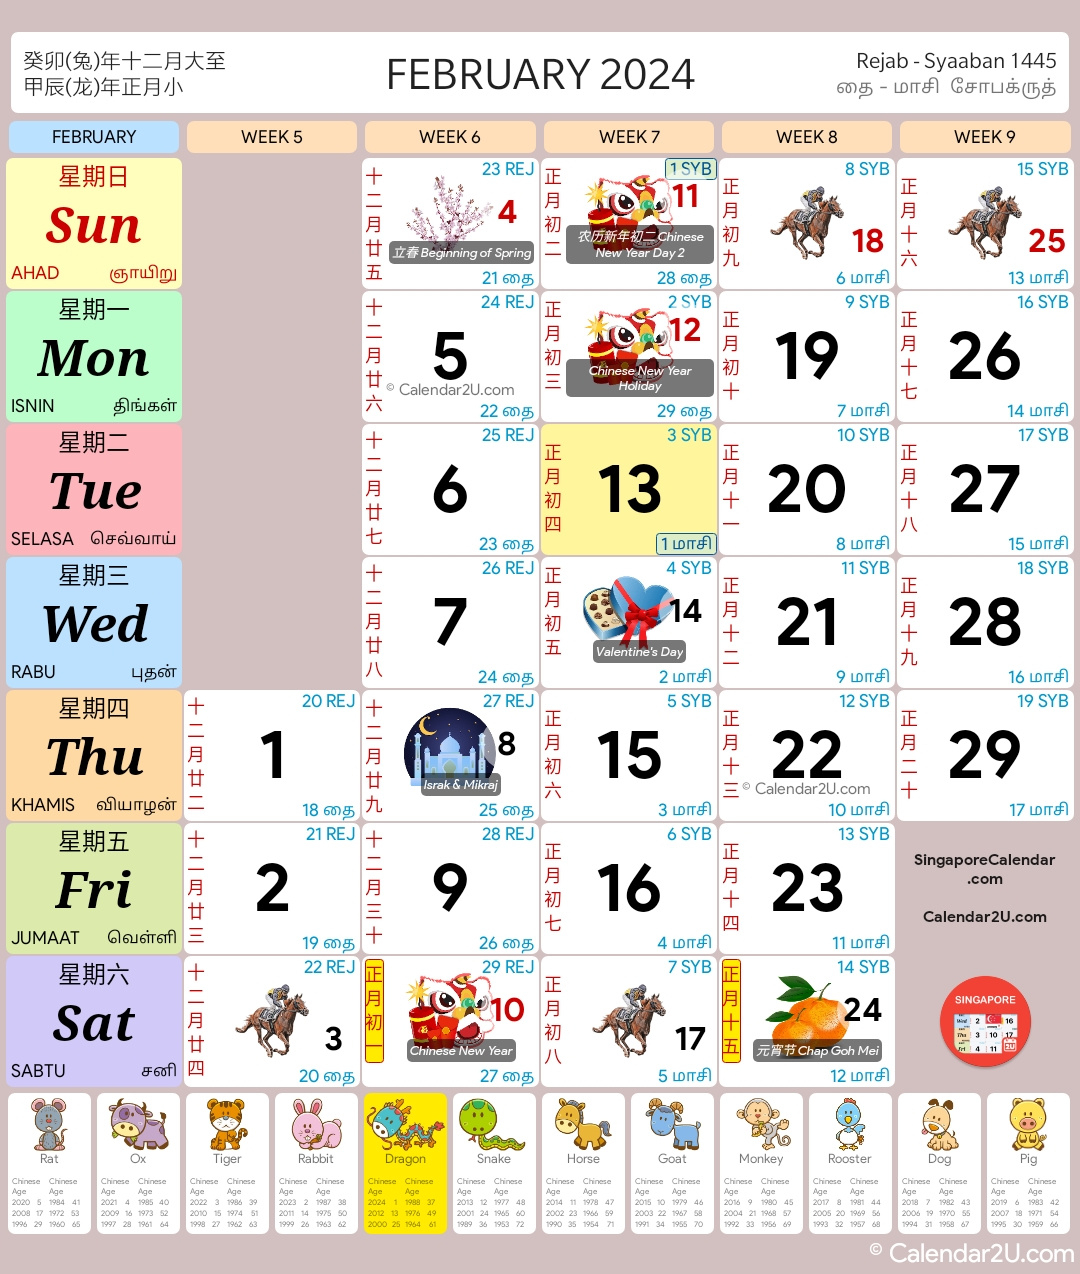 Singapore Calendar Year 2024 - Singapore Calendar with regard to Free Printable Calendar 2024 With Singapore Holidays